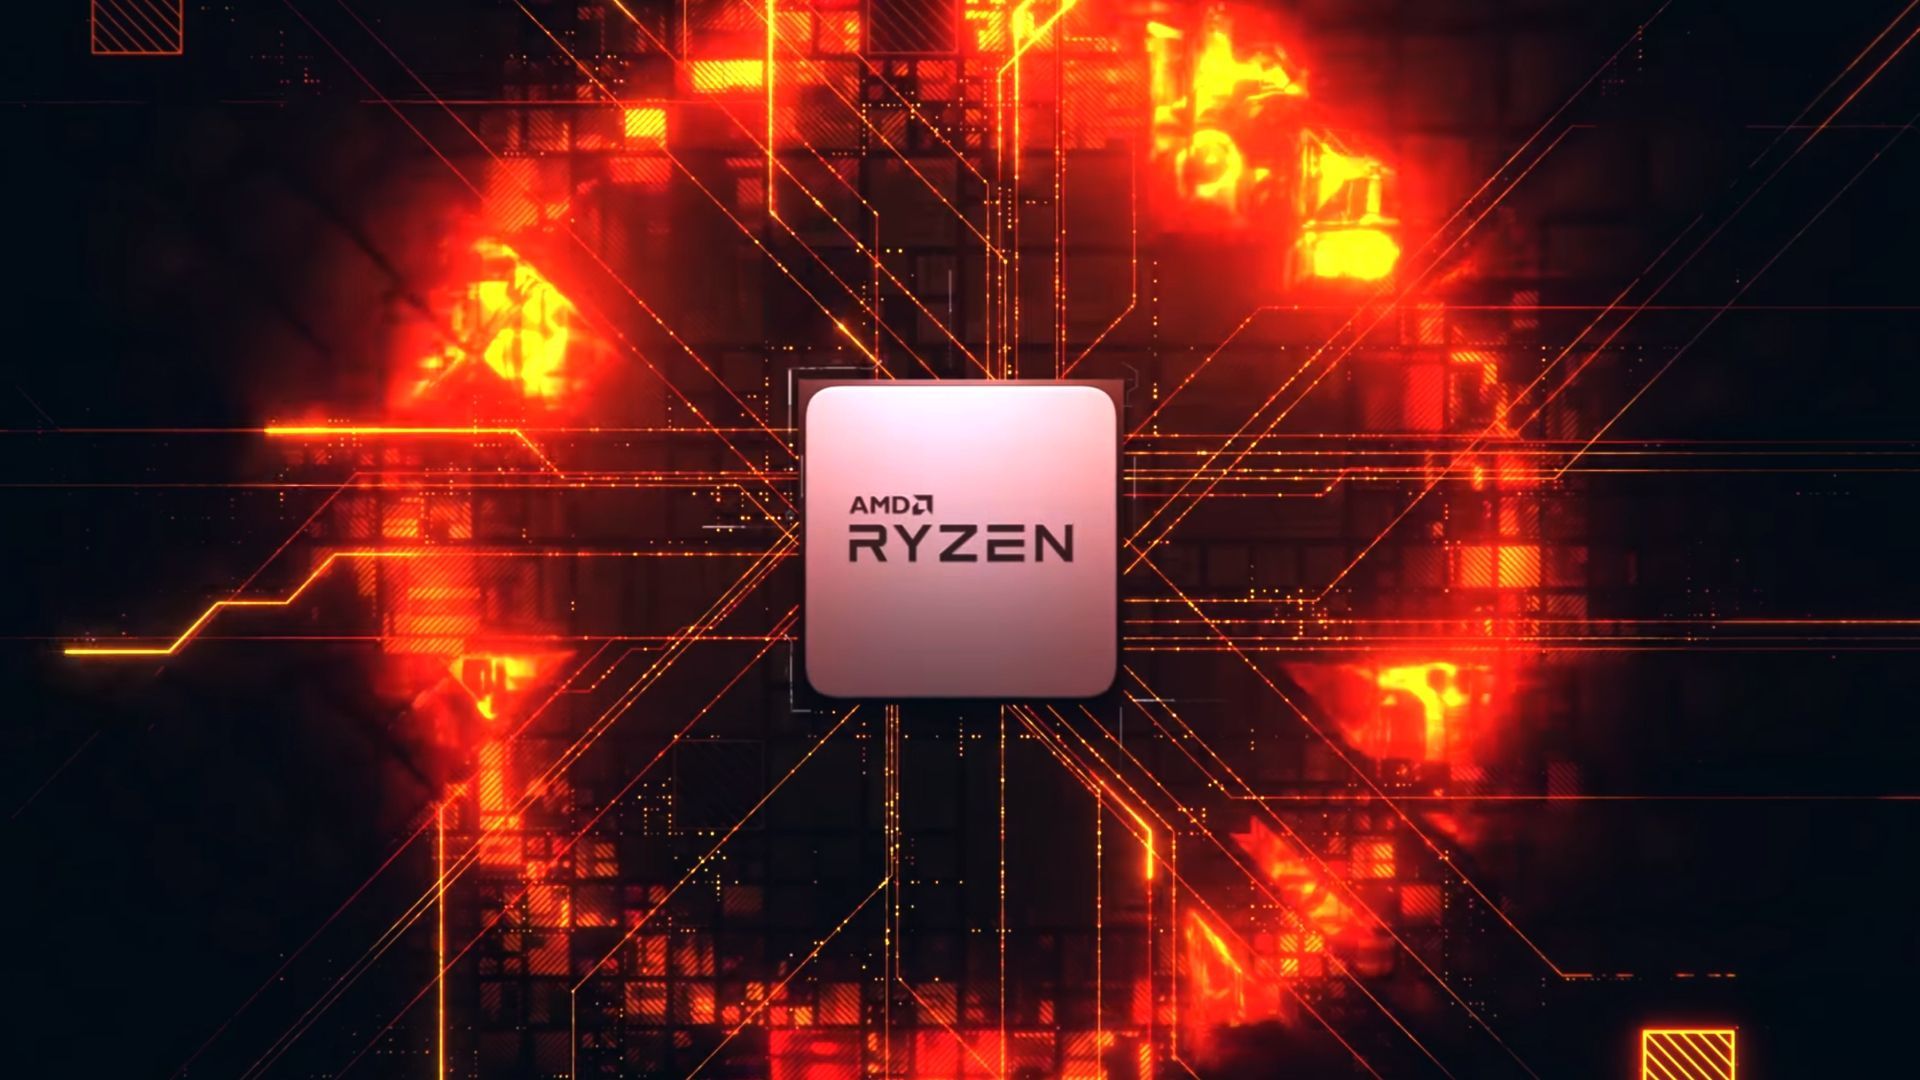 AMD Ryzen 5 Wallpaper Free AMD Ryzen 5 Background